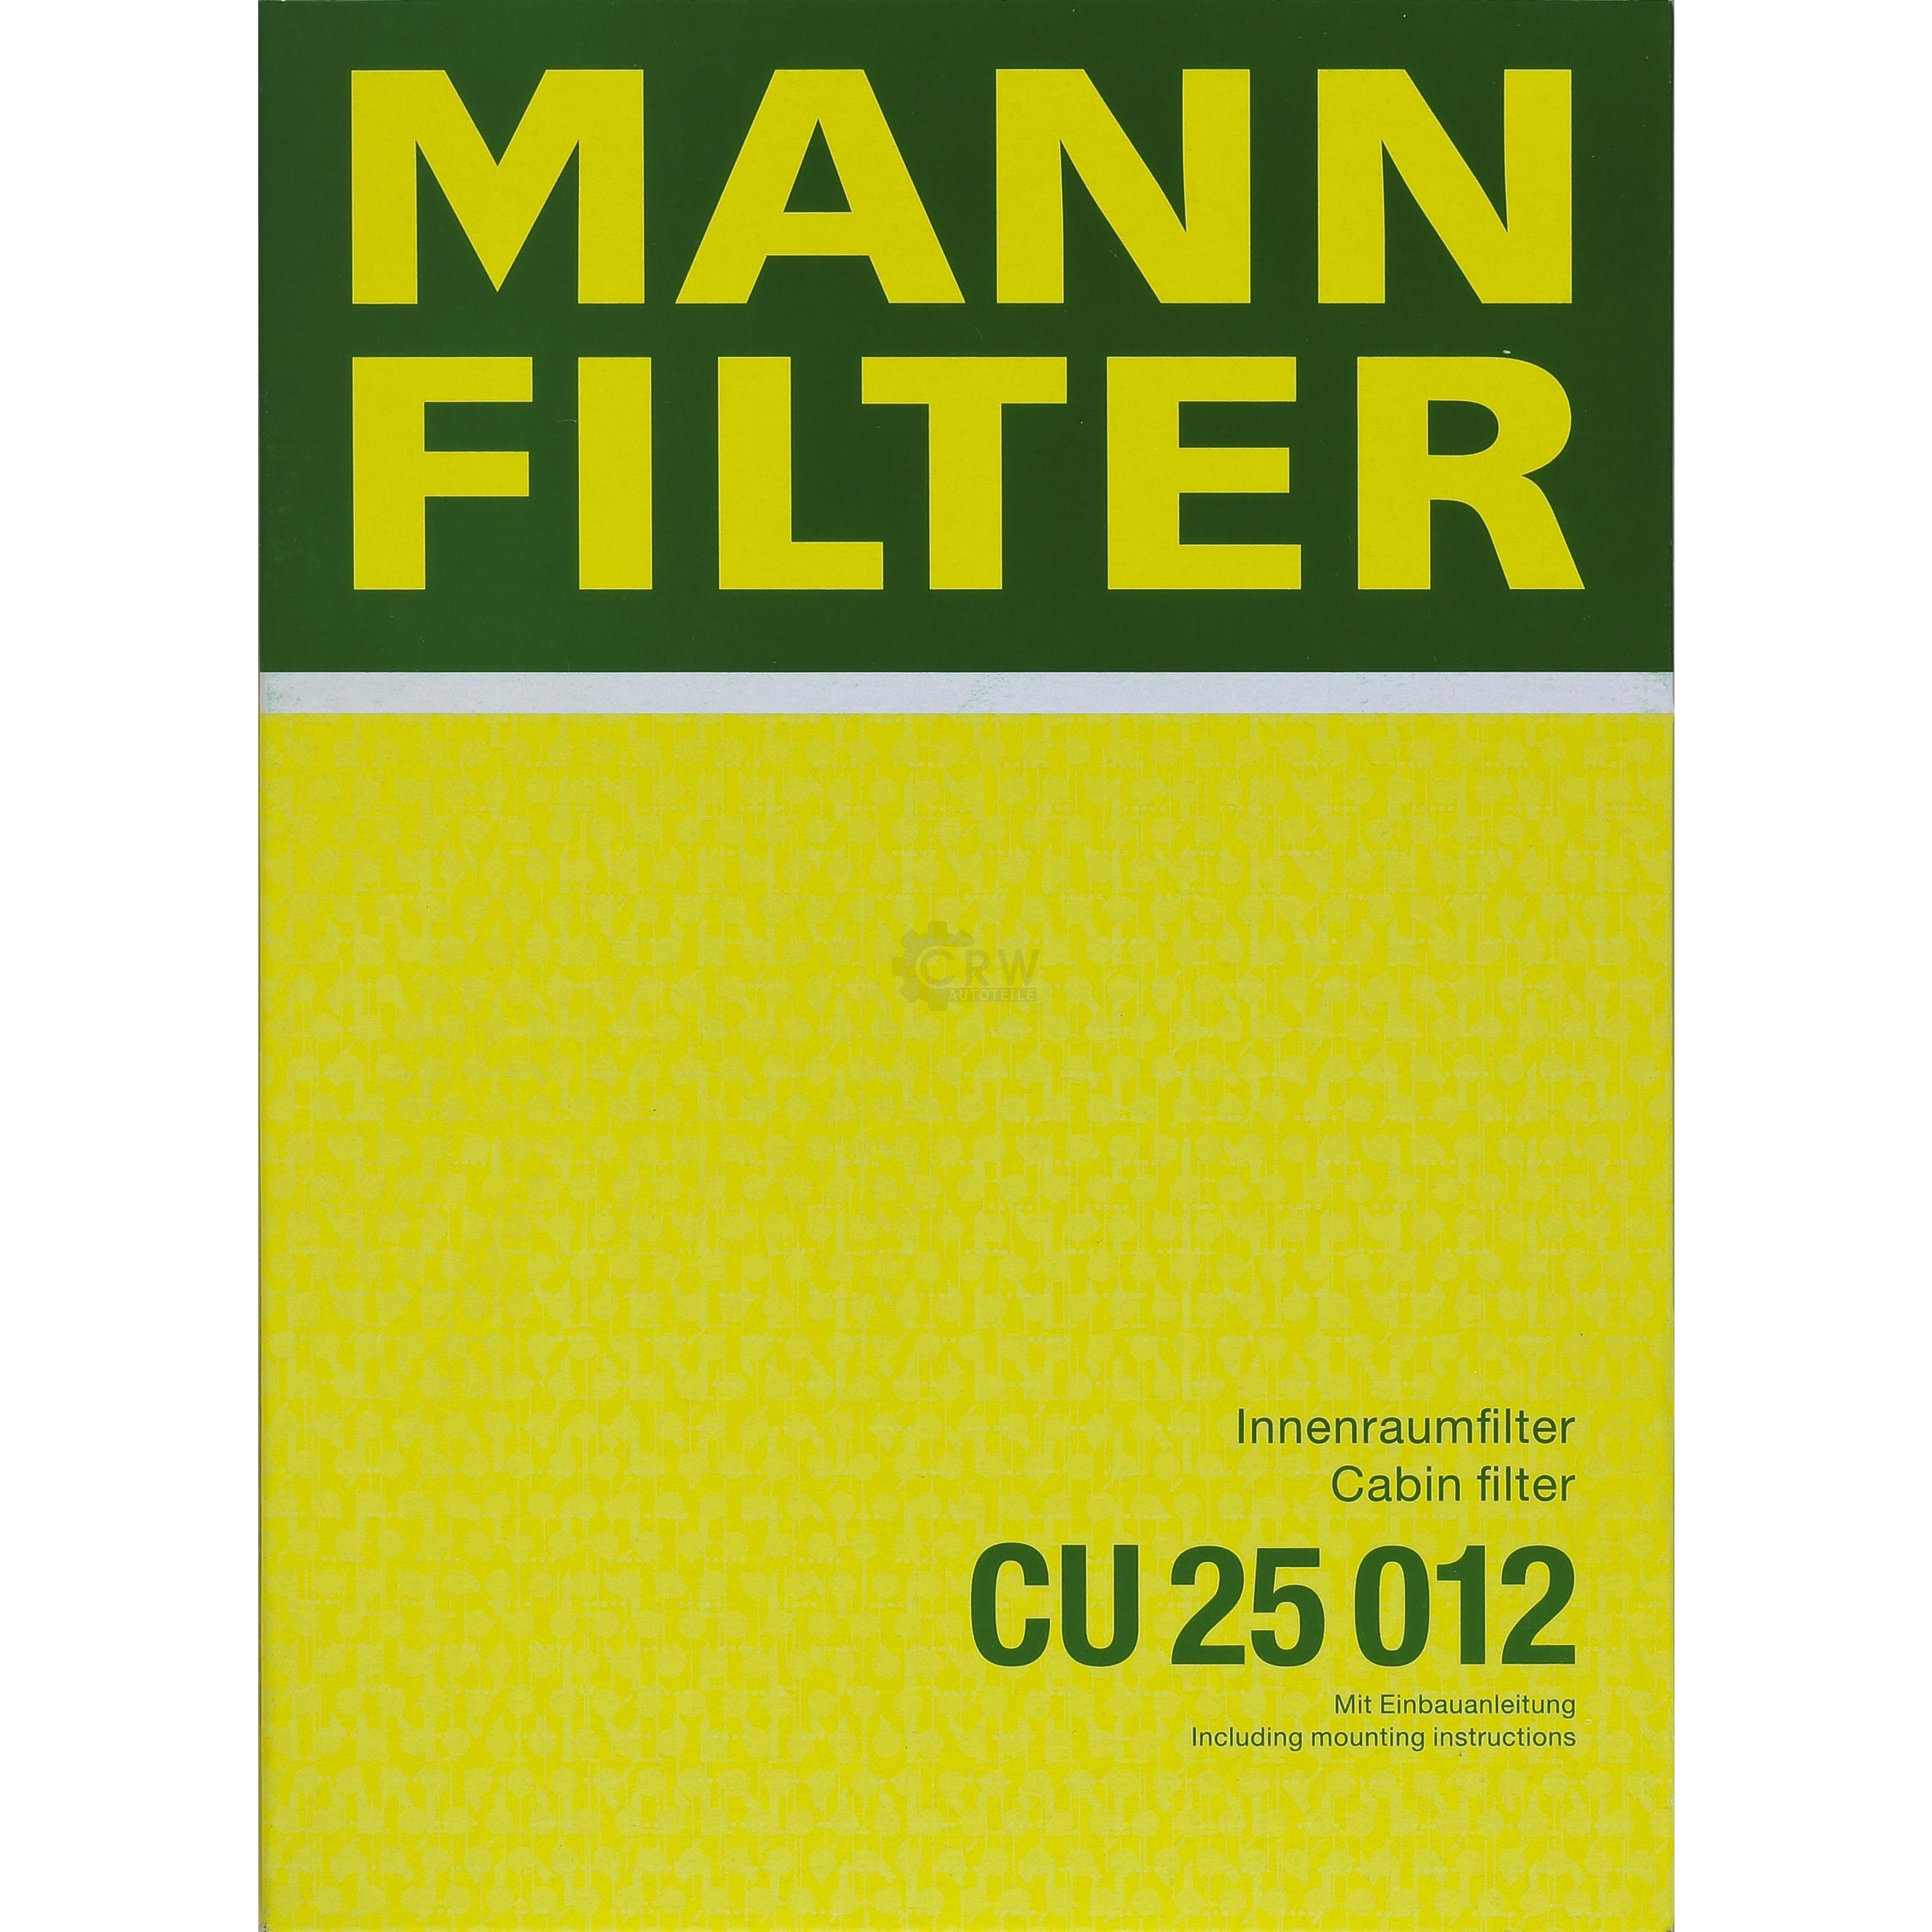 MANN-FILTER Innenraumfilter Pollenfilter CU 25 012